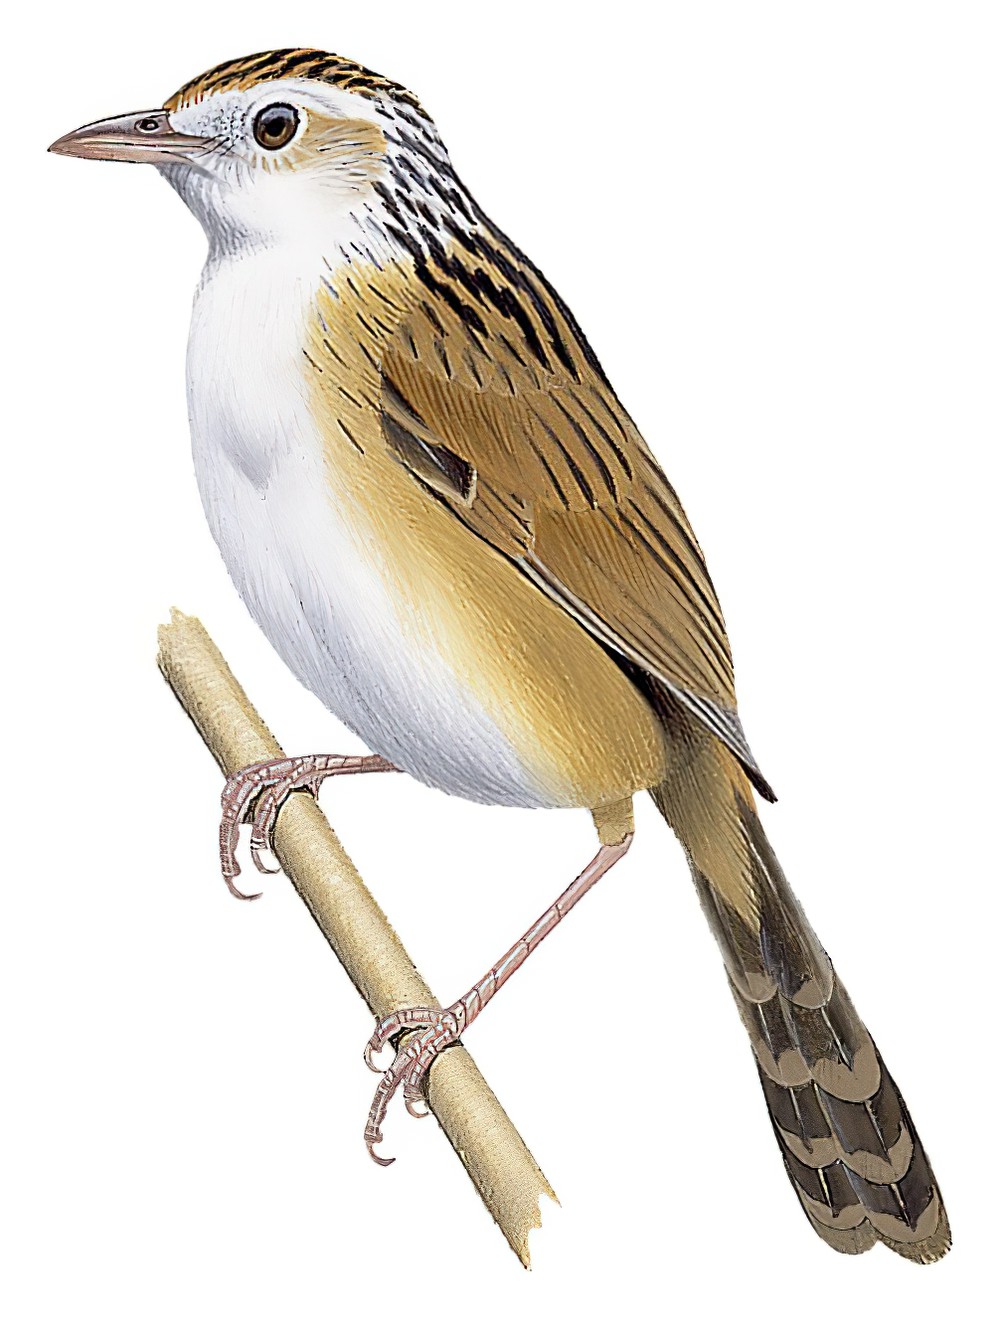 Indian Grassbird / Graminicola bengalensis